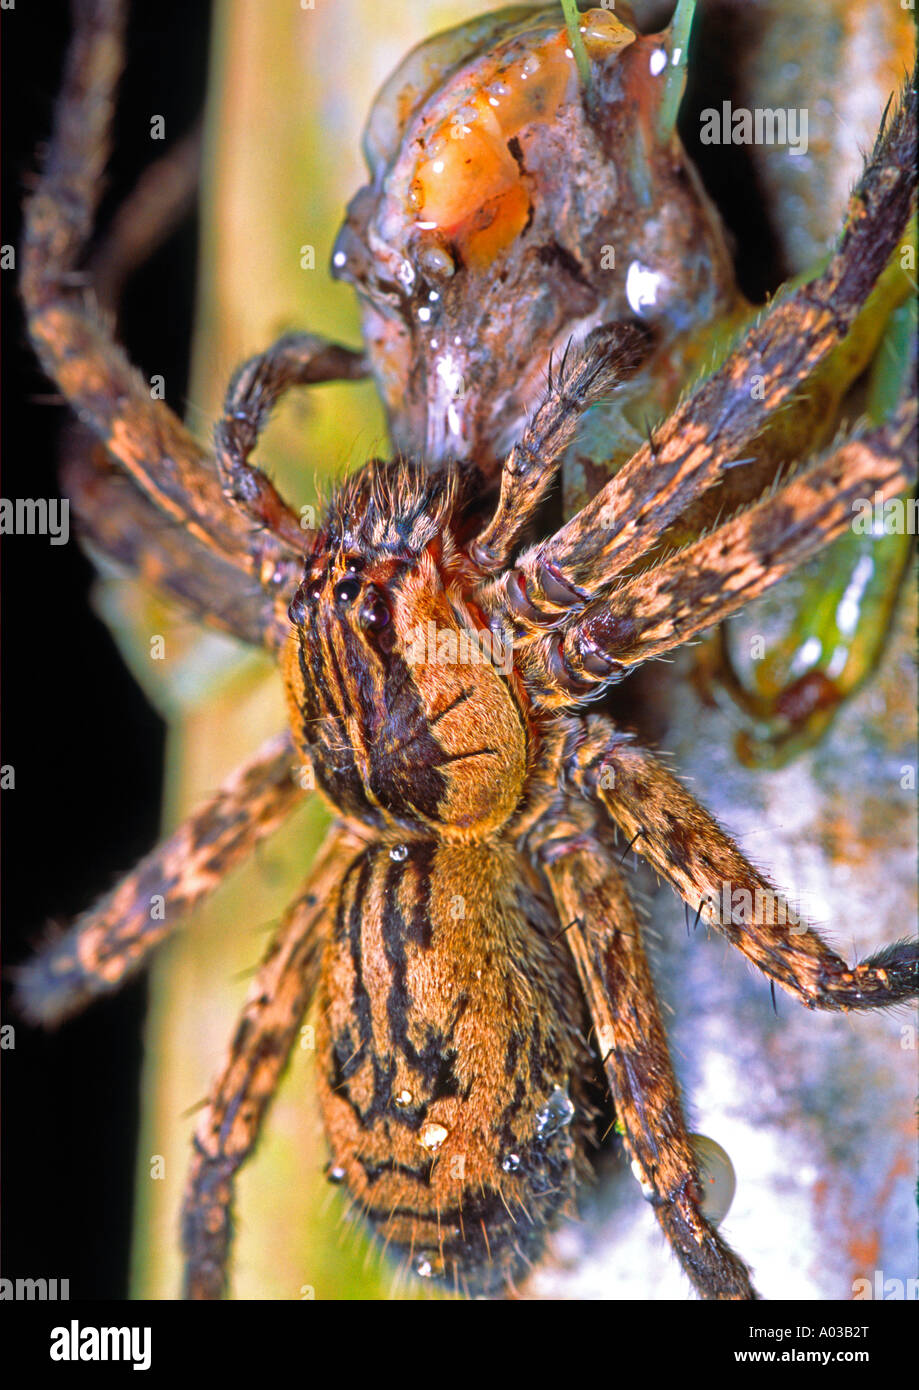 eine riesige Vogelspinne mit Frosch als Beute im Regenwald Costa Ricas  Regenwald Stockfotografie - Alamy